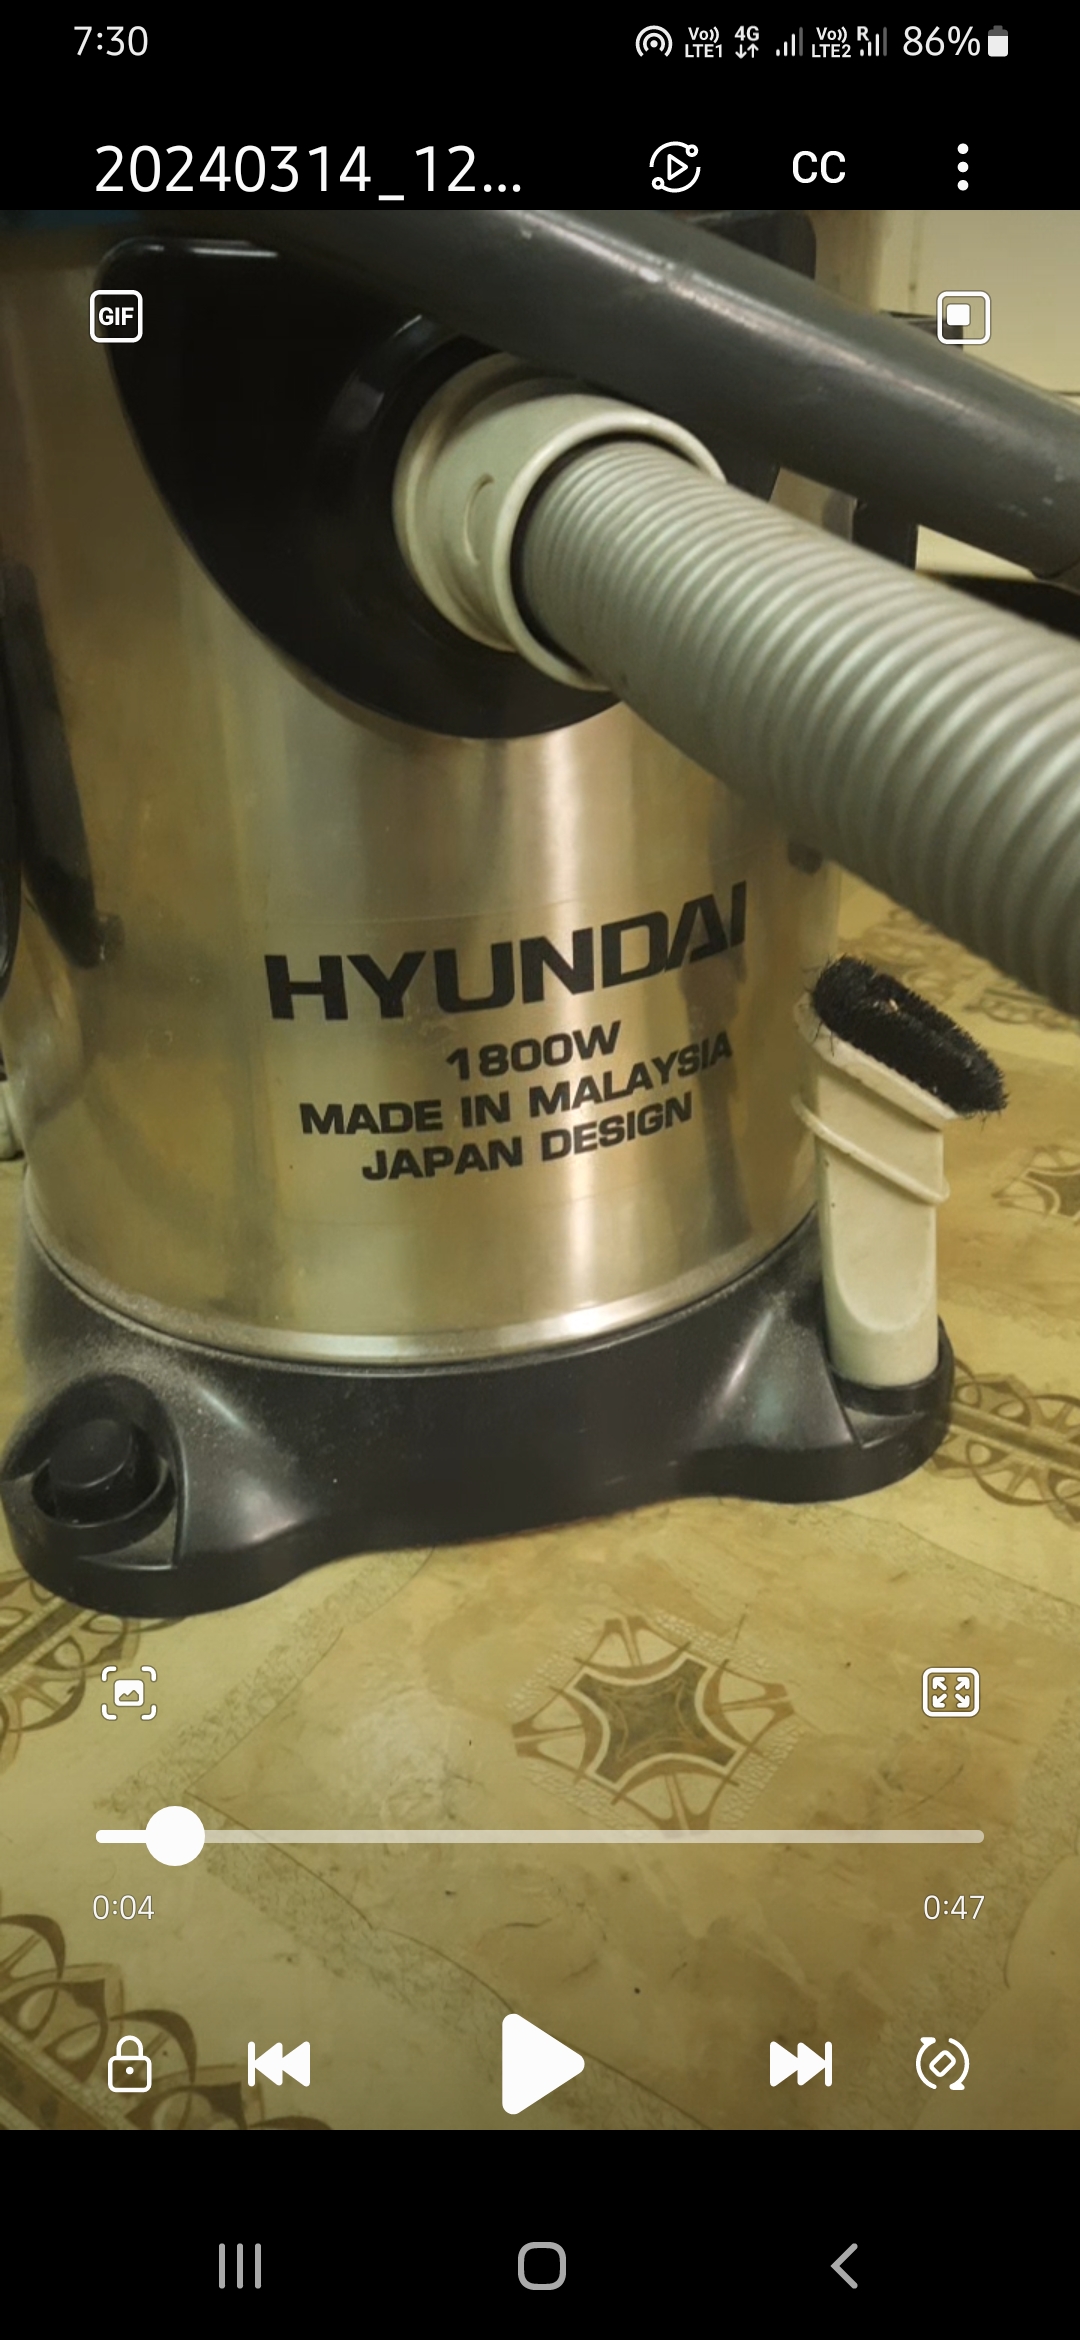 Hyundai Vacuum cleaner, 1800 Watts 